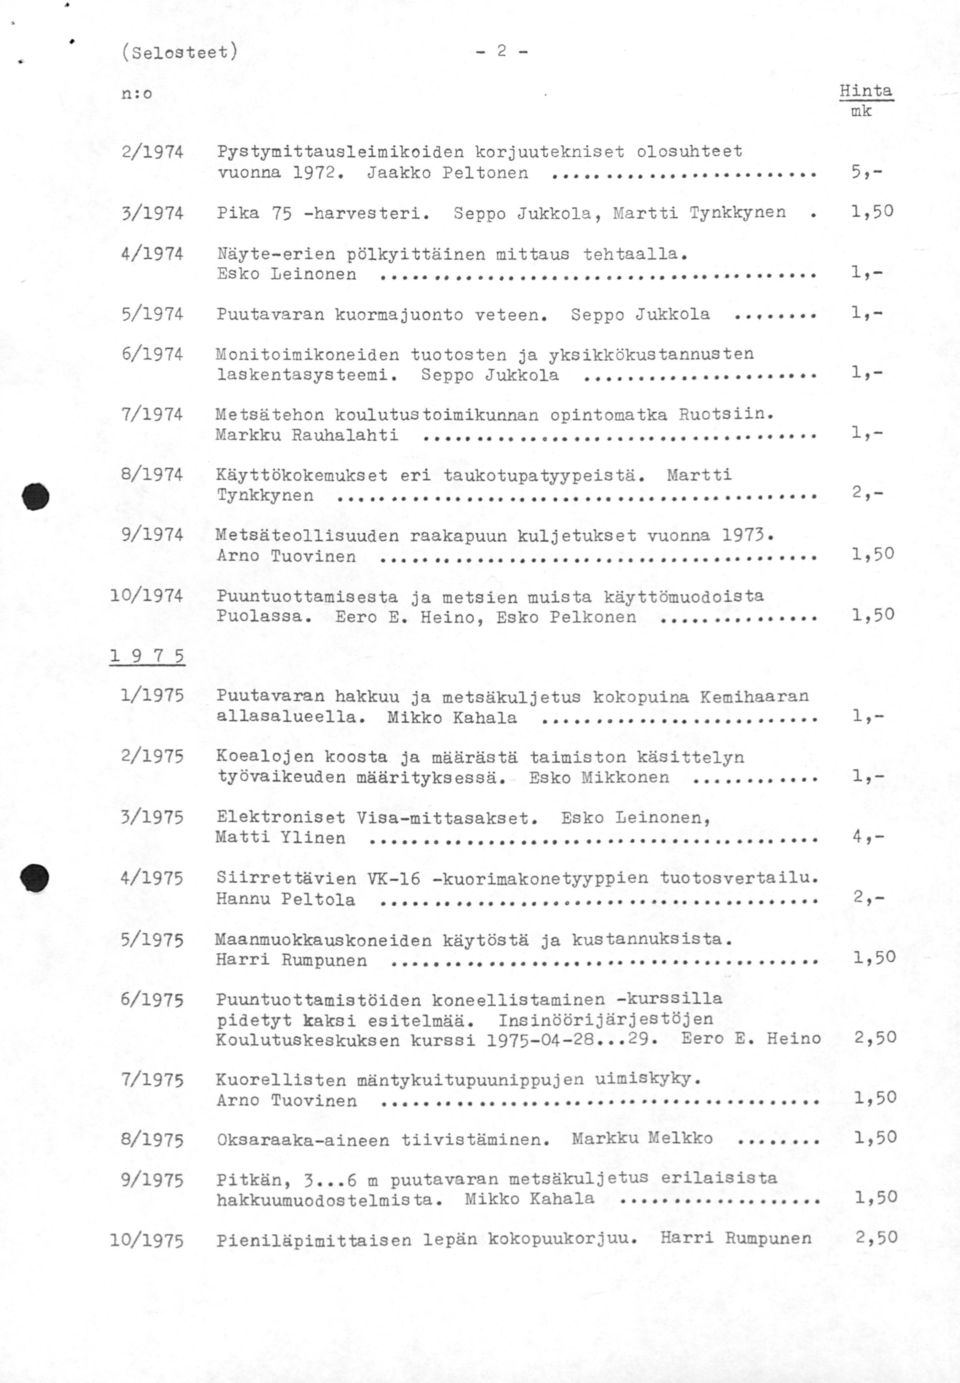 6/1974 Monitoimikoneiden tuotosten ja yksikkökustannusten laskentasysteemi. Seppo Jukkola 7/1974 Metsätehon koulutustoimikunnan opintomatka Ruotsiin. Markku Rauhalahti 8/1974 1, - Martti.